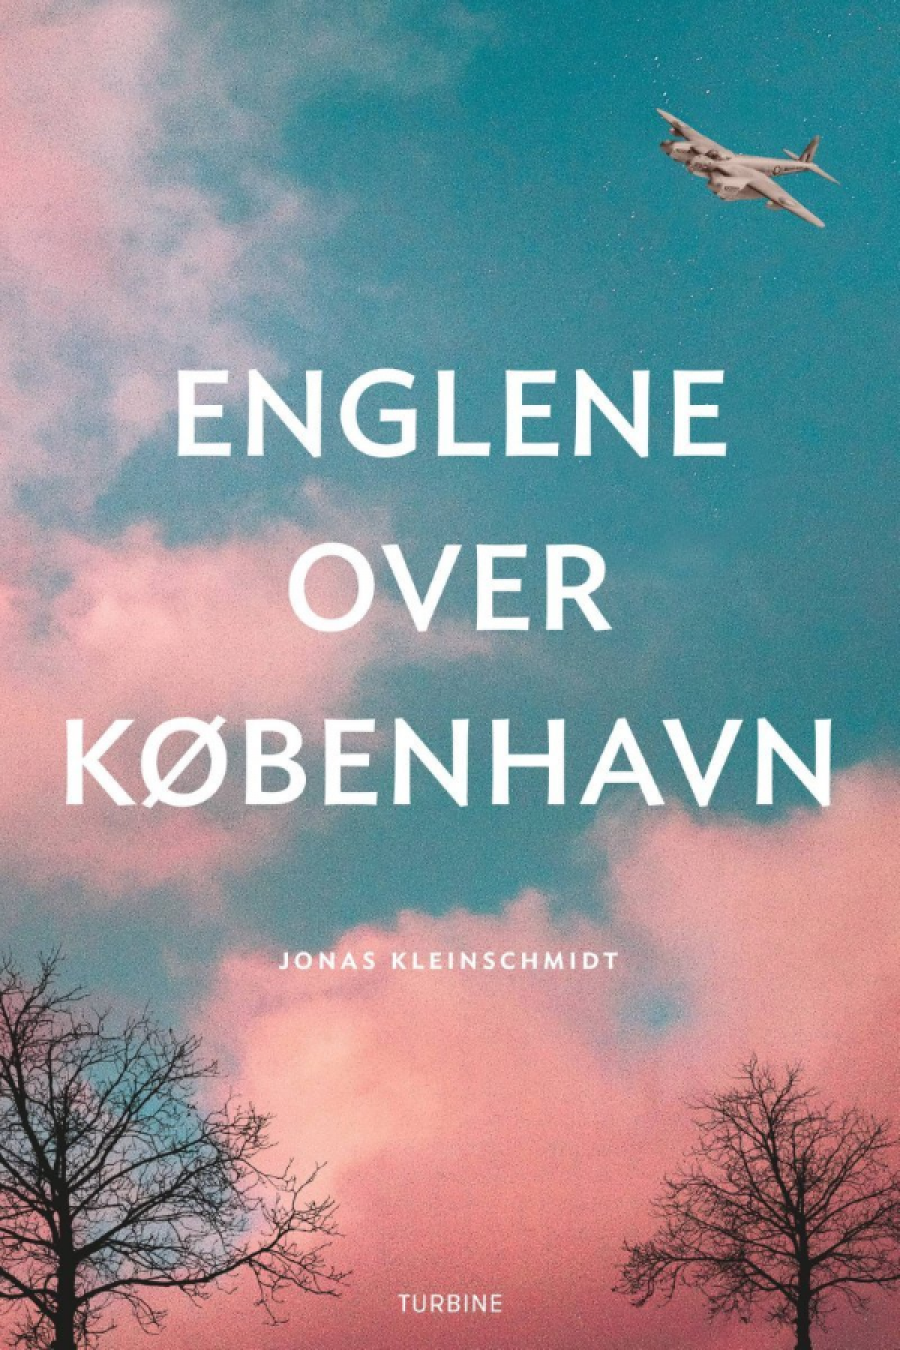 Billede af bogen Englene over København af Jonas Kleinschmidt